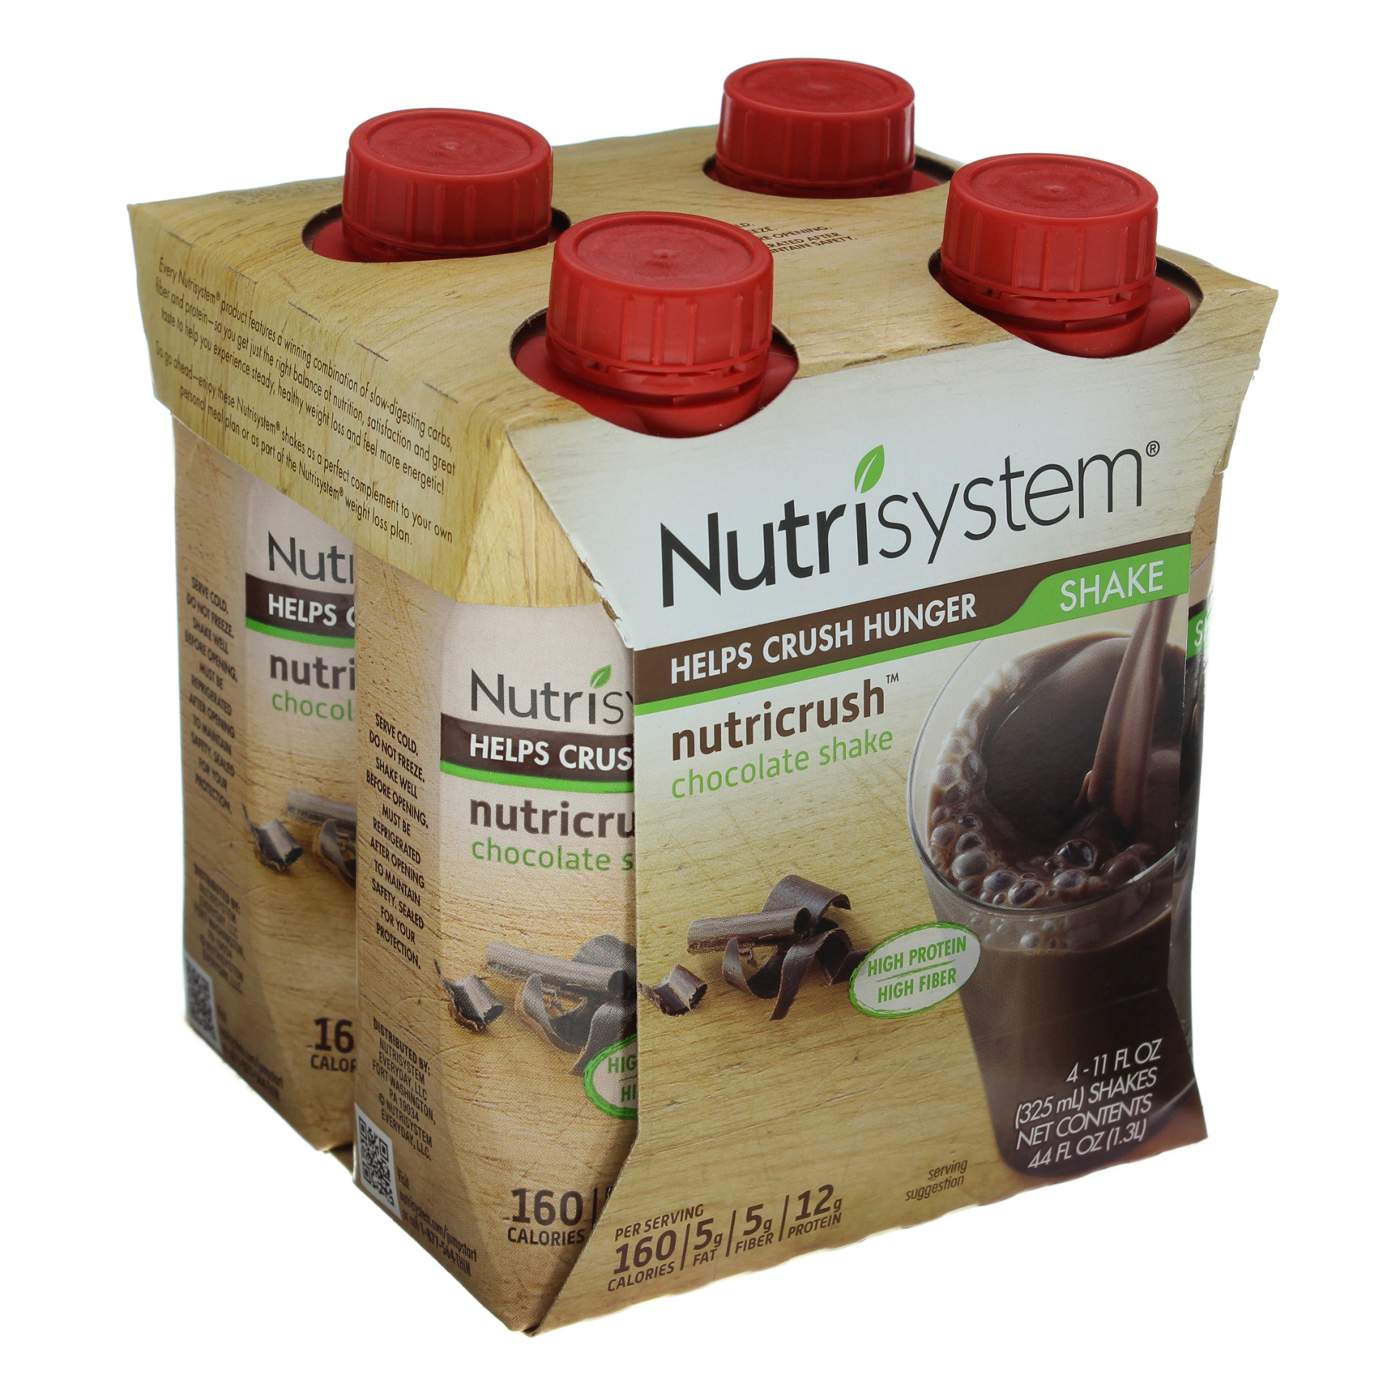 Nutrisystem - Nutrisystem, NutriCrush - Shake Mix, Chocolate (5